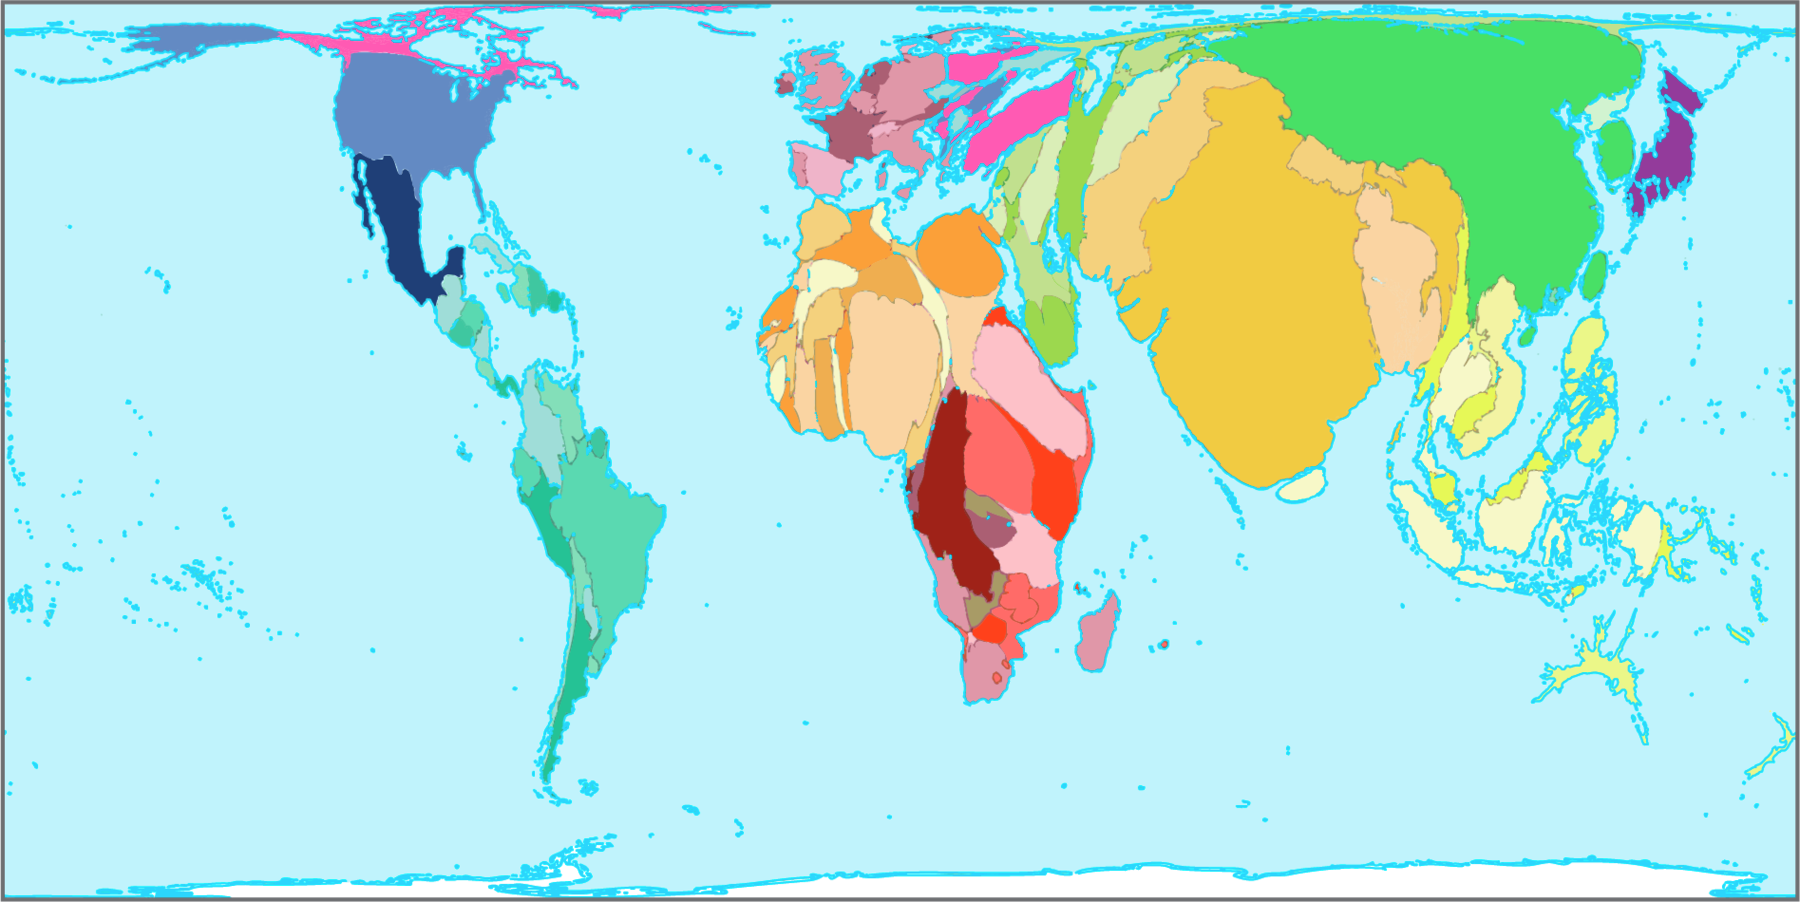 Mapa. Mundo: distribuição da população, projeção para 2050.  Anamorfose dos continentes com a representação dos países em cores variadas.  Na anamorfose, o continente americano está mais fino em relação à sua representação nos planisférios. Nesse sentido, merece destaque o Canadá, com uma dimensão muito menor na  anamorfose. Os países com as maiores dimensões são Brasil e Estados Unidos. Na África e na Europa, a distorção é menos acentuada. Na Ásia, Índia e China estão com área muito maior do que a que possuem nos planisférios e a Rússia, ao contrário, está com área muito reduzida, aparecendo pequena e fina. Os países do leste e do sudeste asiático também estão com dimensões maiores do que as que possuem nos planisférios. Oceania e Antártida estão com área muito reduzida. Na anamorfose, não há indicação de paralelos e meridianos, escala, rosa dos ventos e nome dos oceanos.